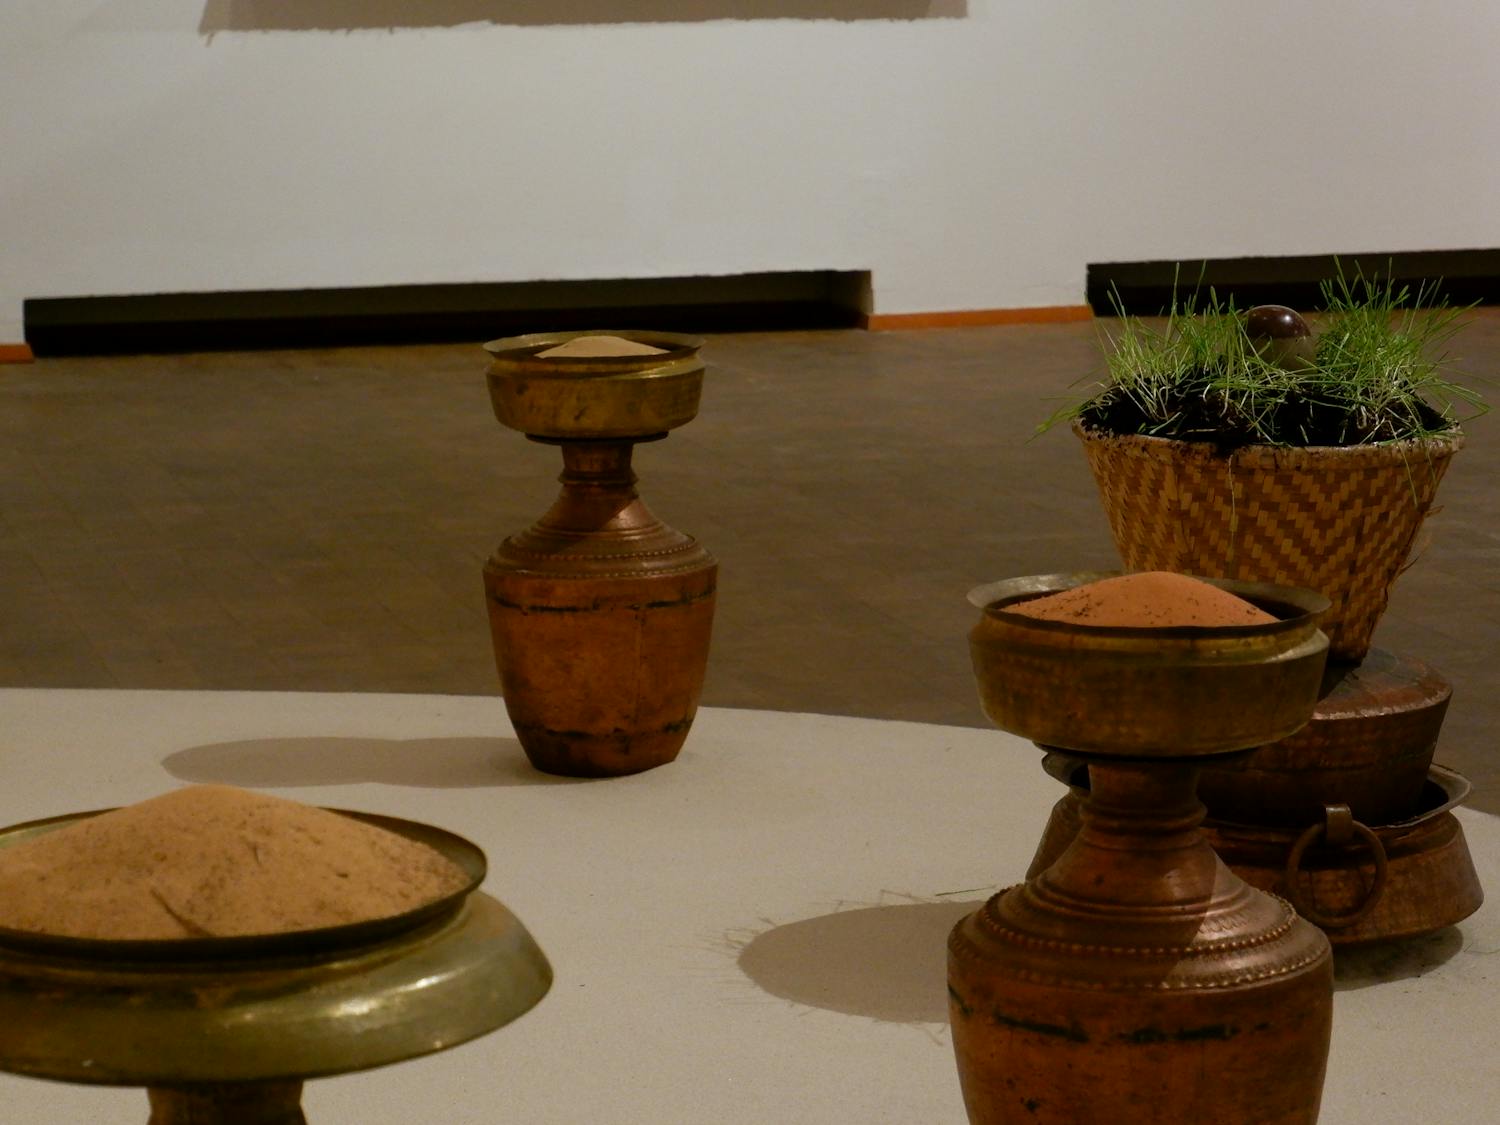 Jyoti Duwadi breaks down barriers at the Western Gallery